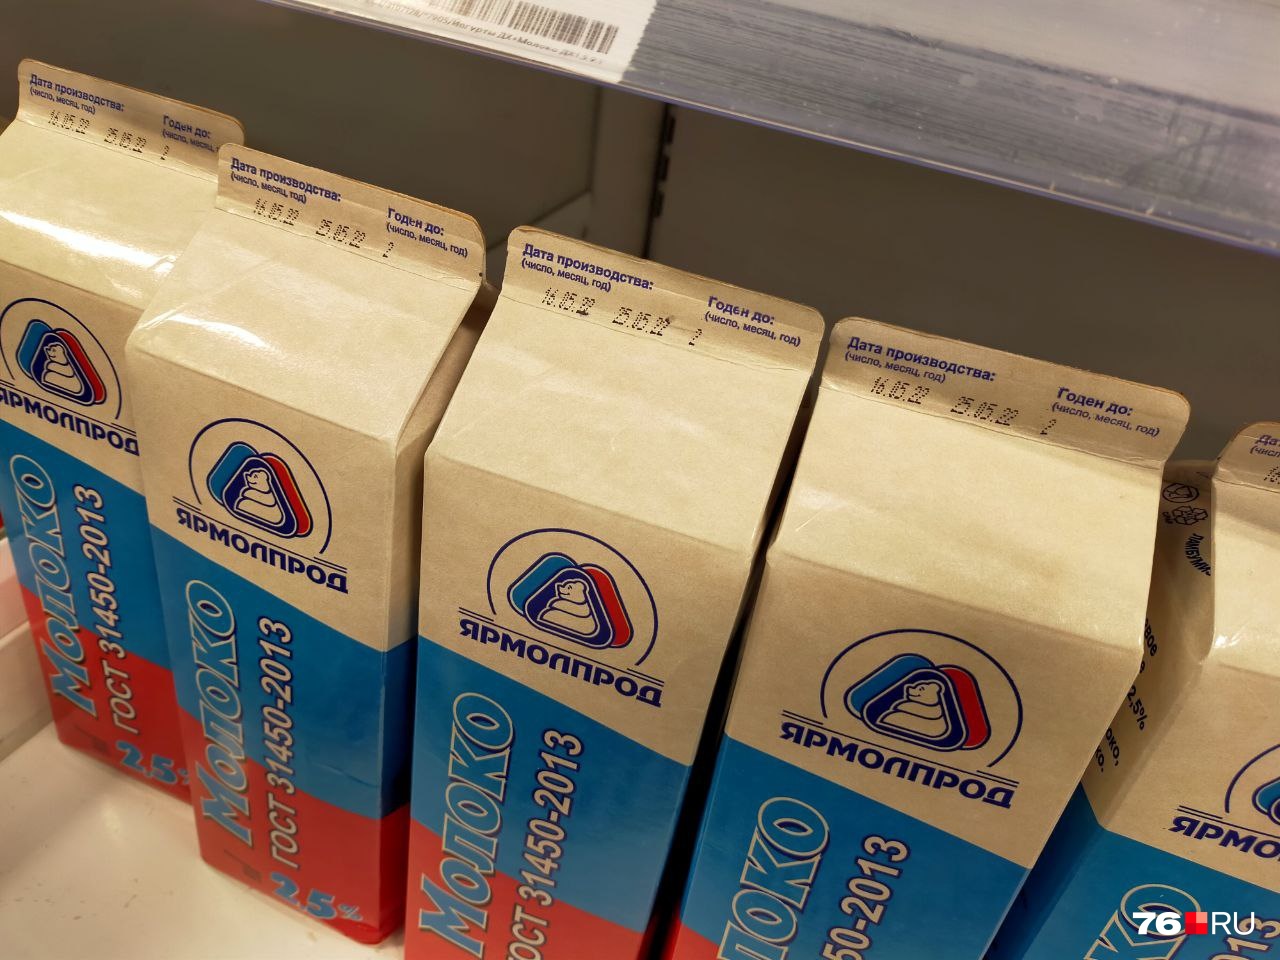 Литровые упаковки у молока компании «ЯрМолПрод» с 16 мая стали попроще и без откручивающихся крышечек